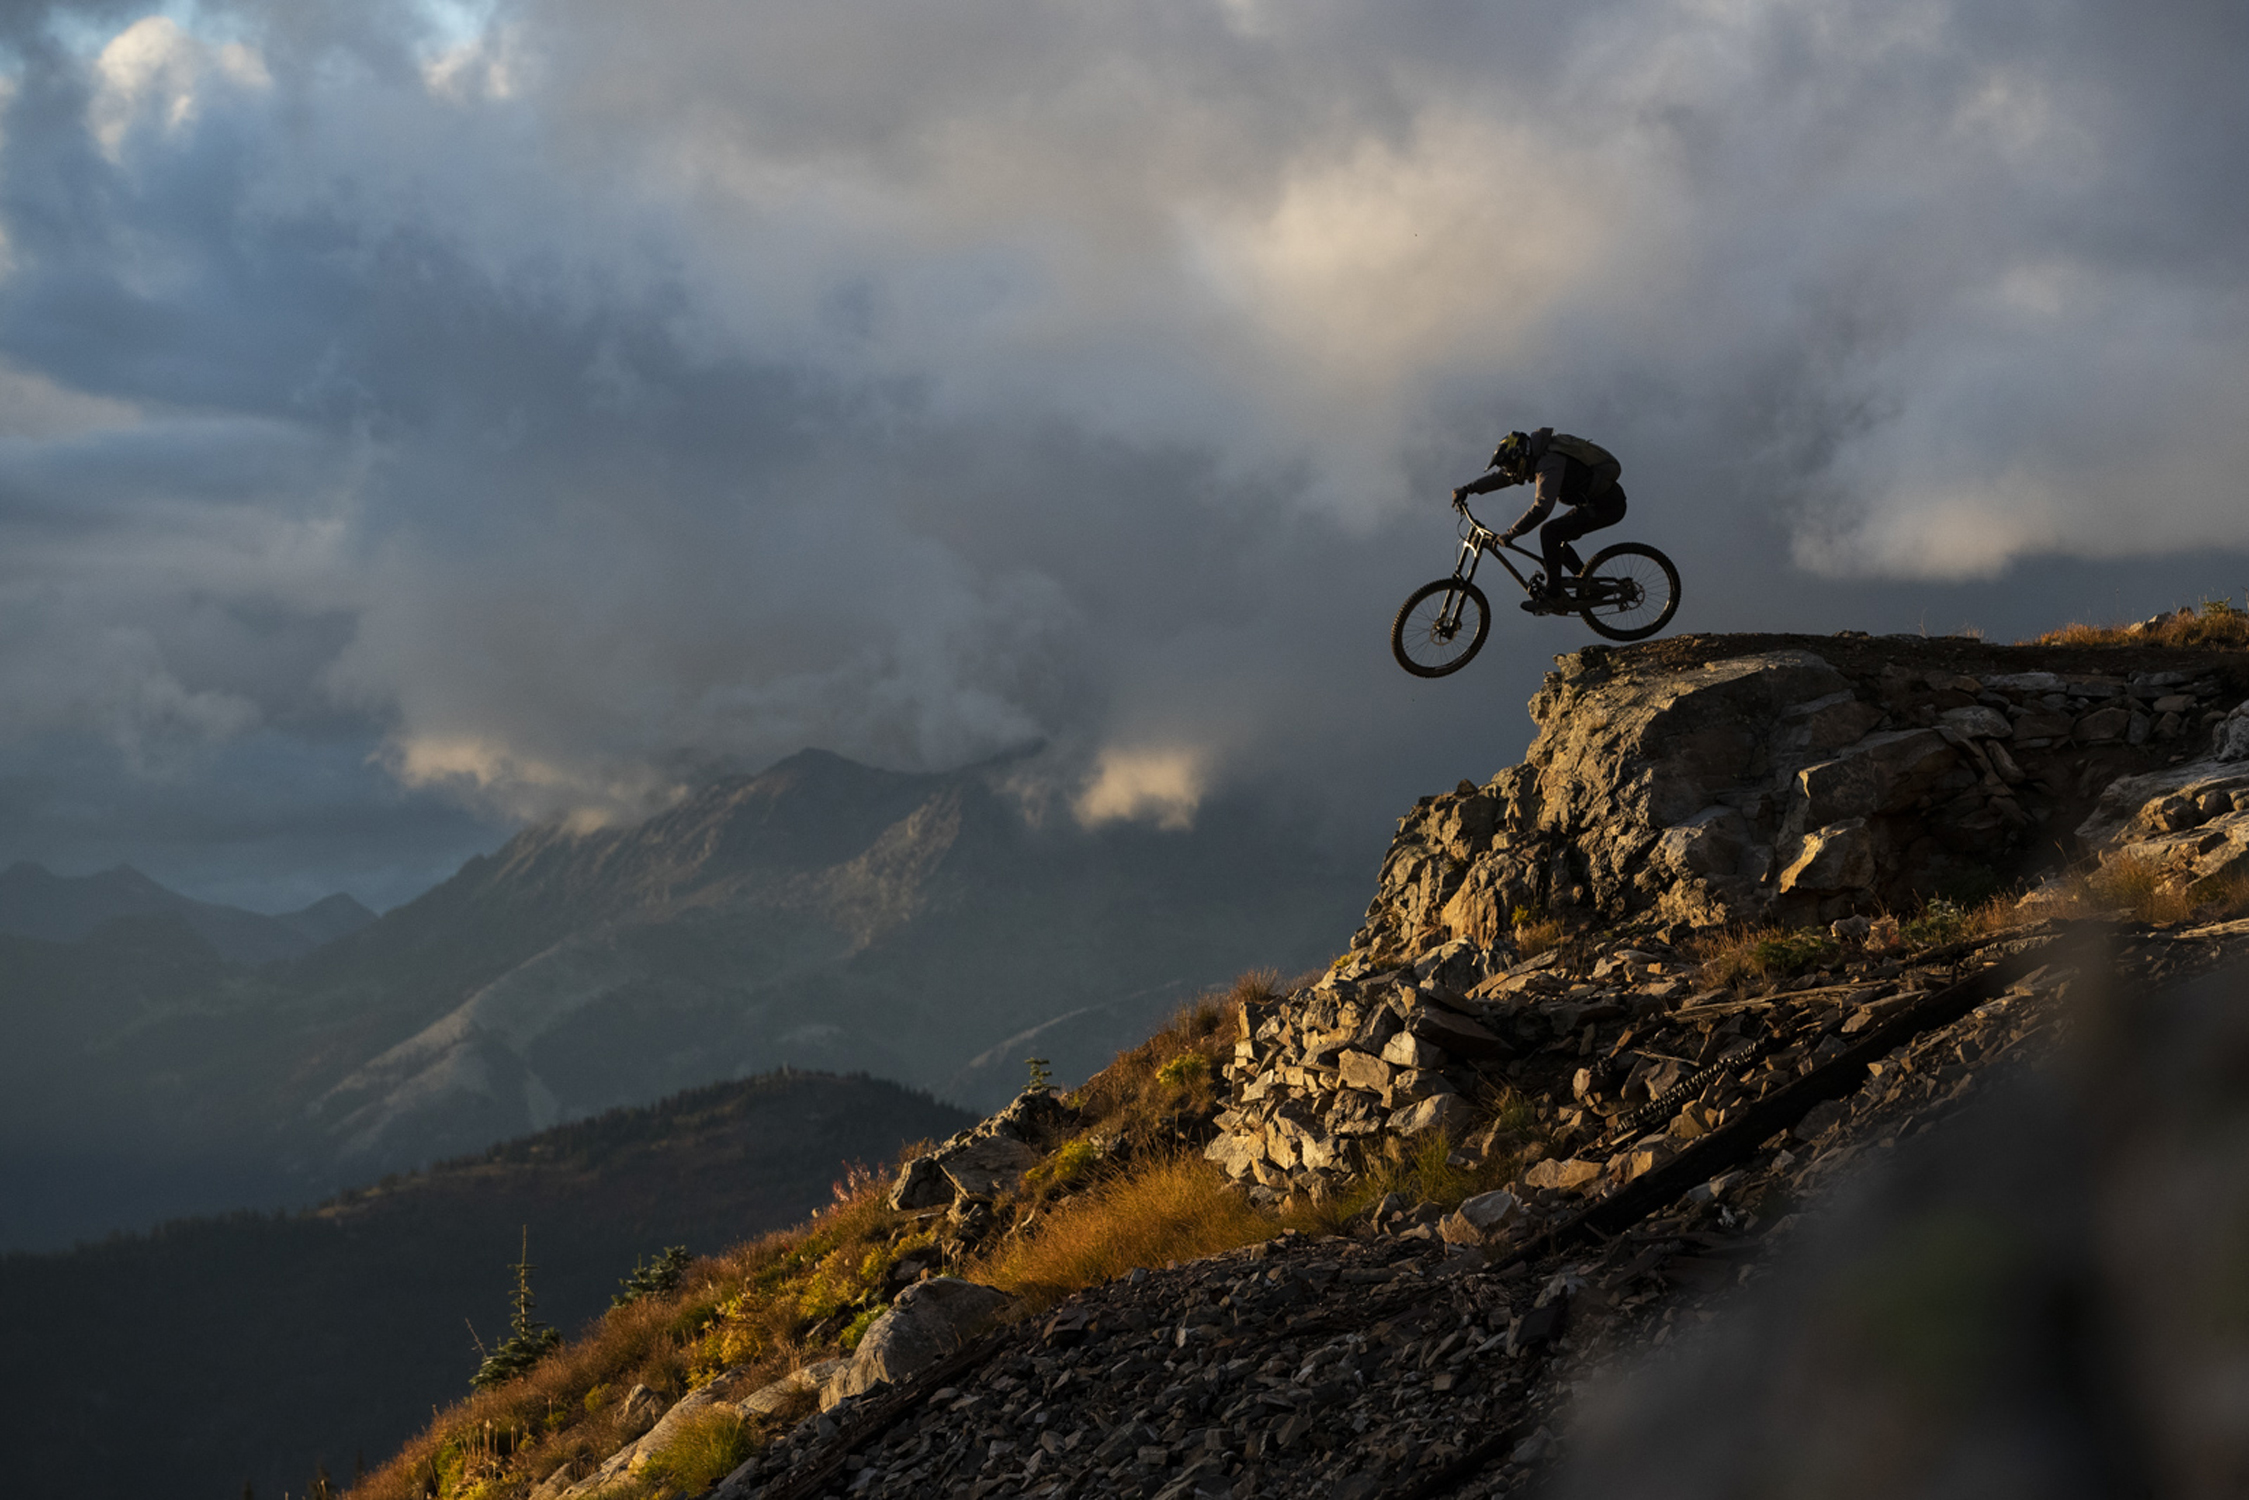 Kurt Sorge affronta un drop roccioso sulla sua mountain bike Evil da downhill 